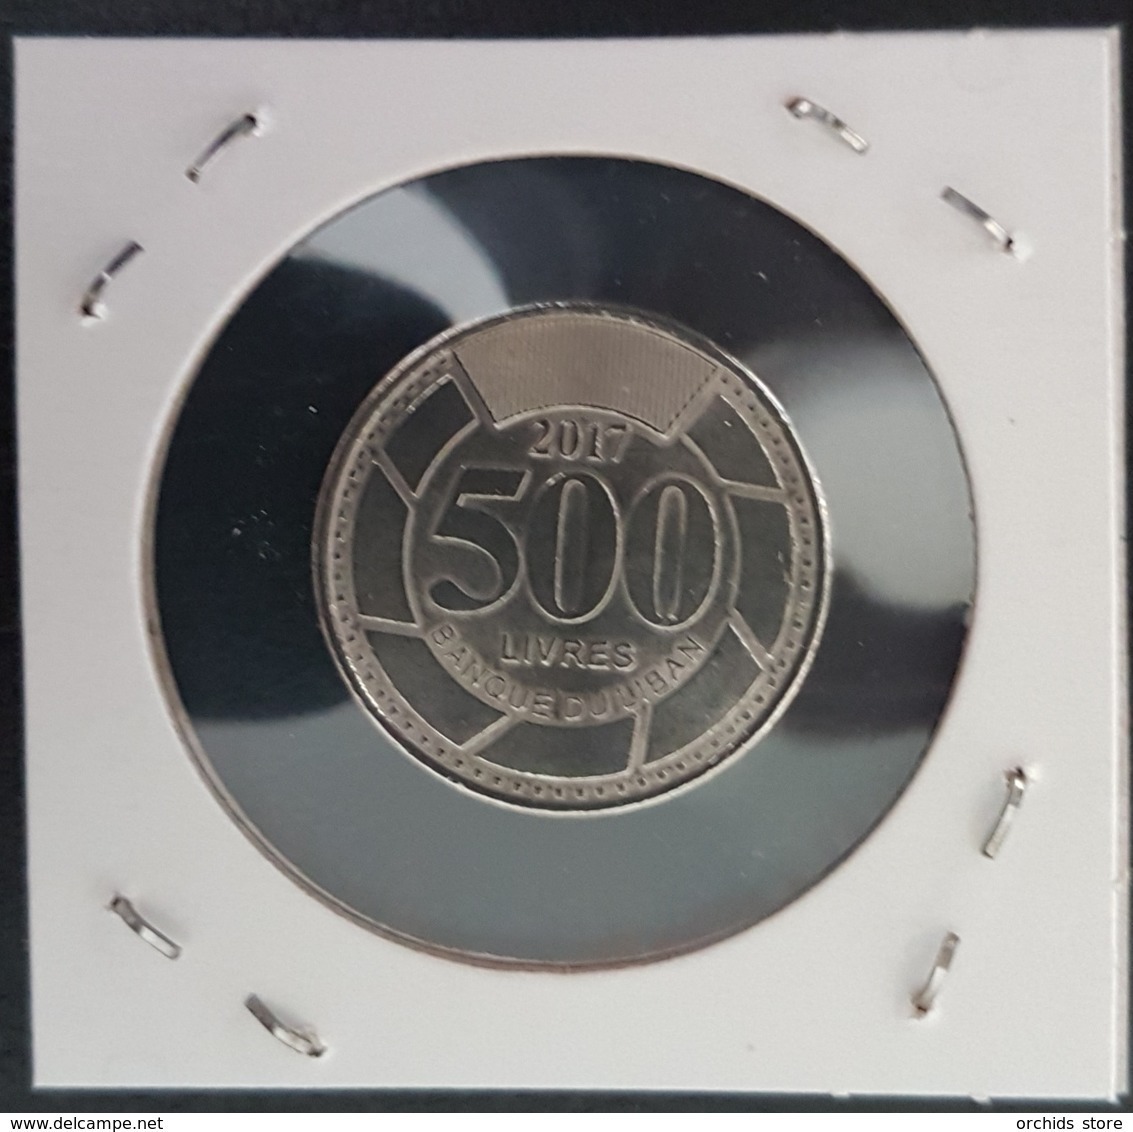 Lebanon 2017 500 Livres Coin UNC - Lebanon